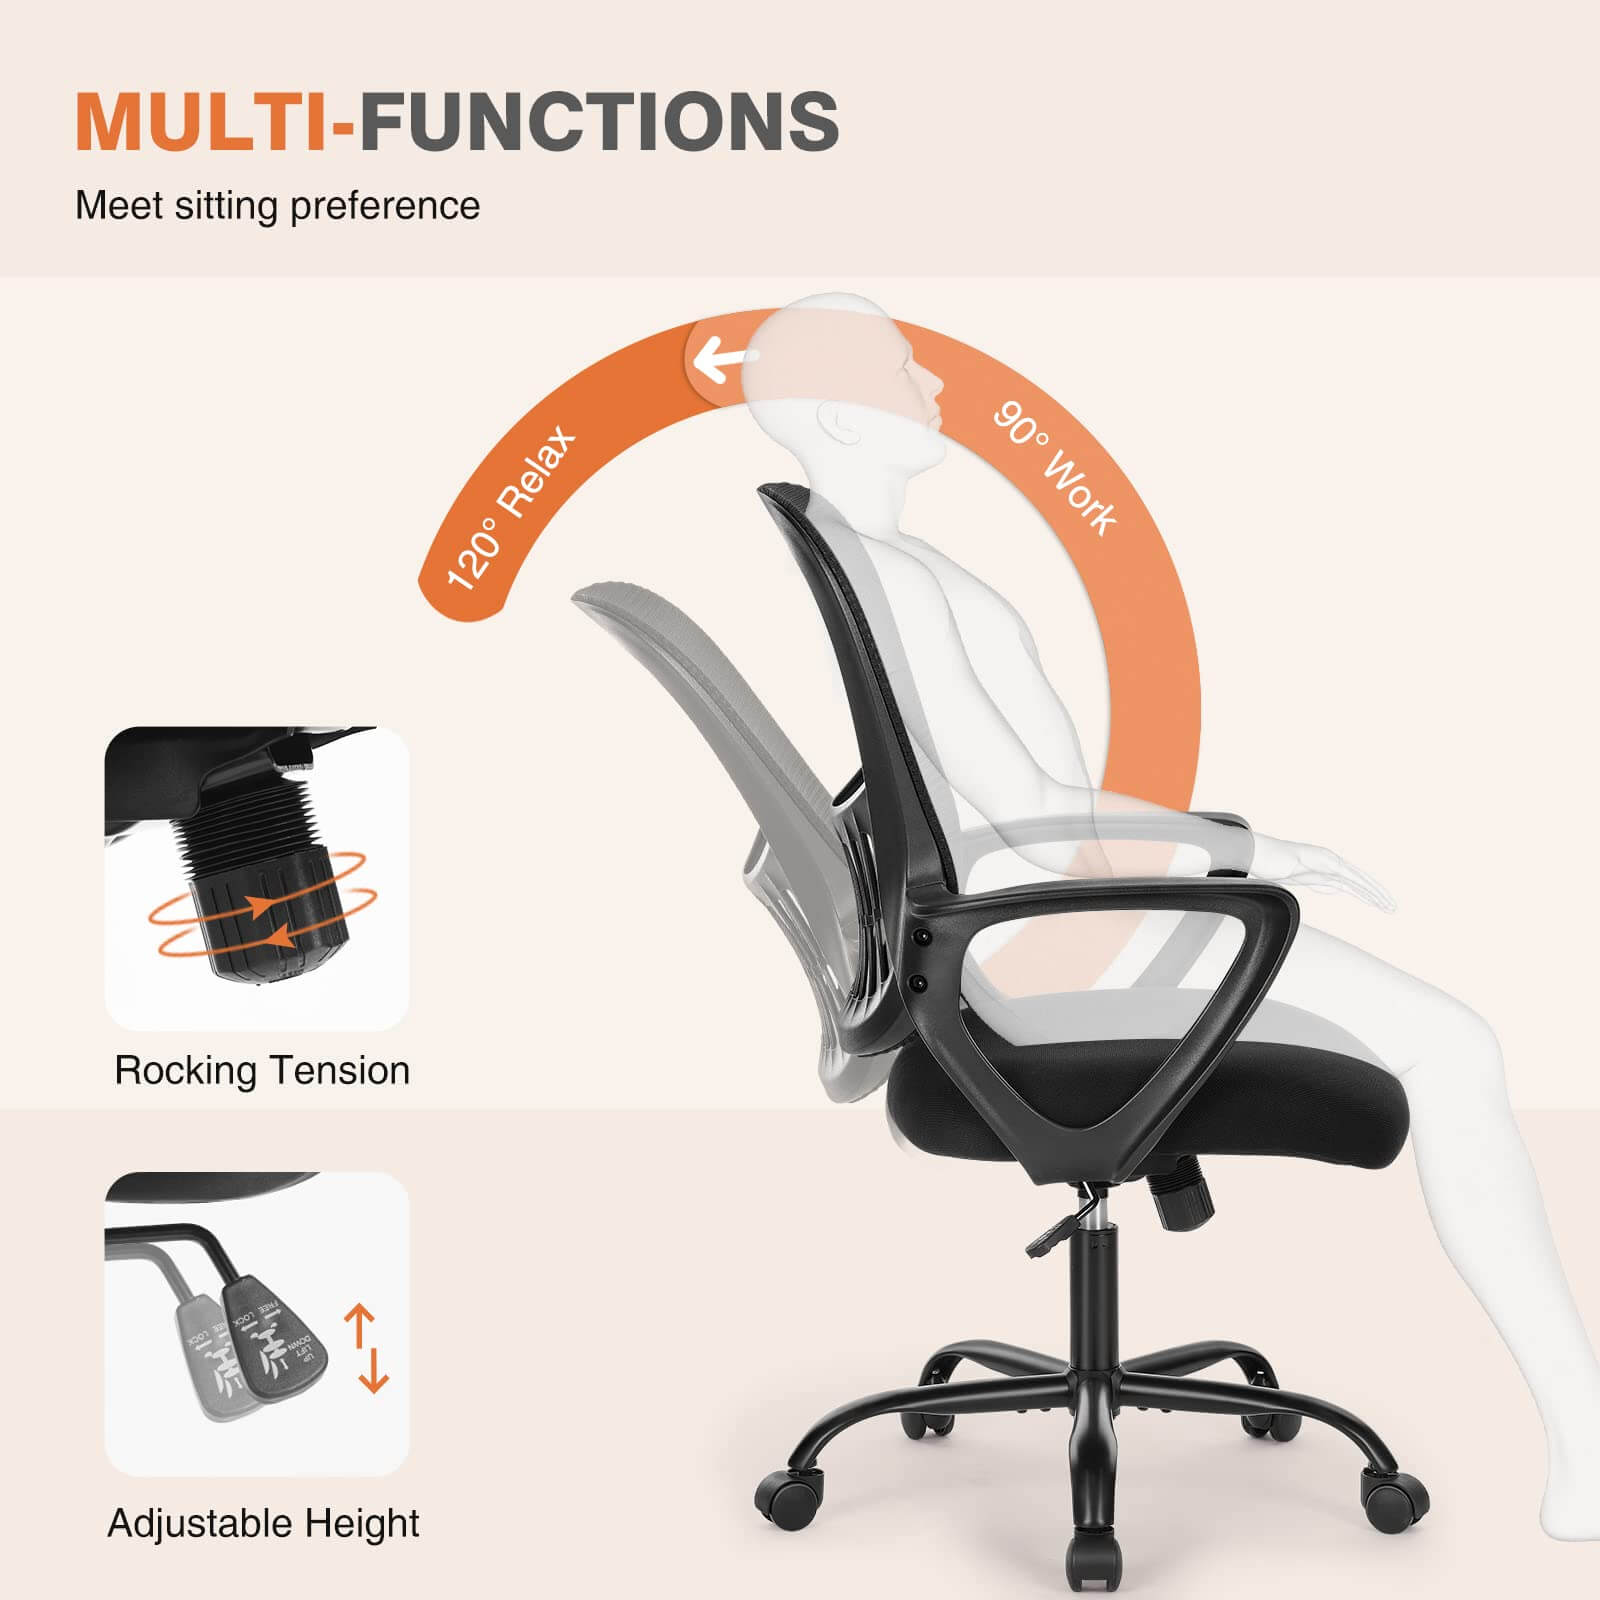 office-chair-ergonomic#Quantity_4 Chair#Color_Black